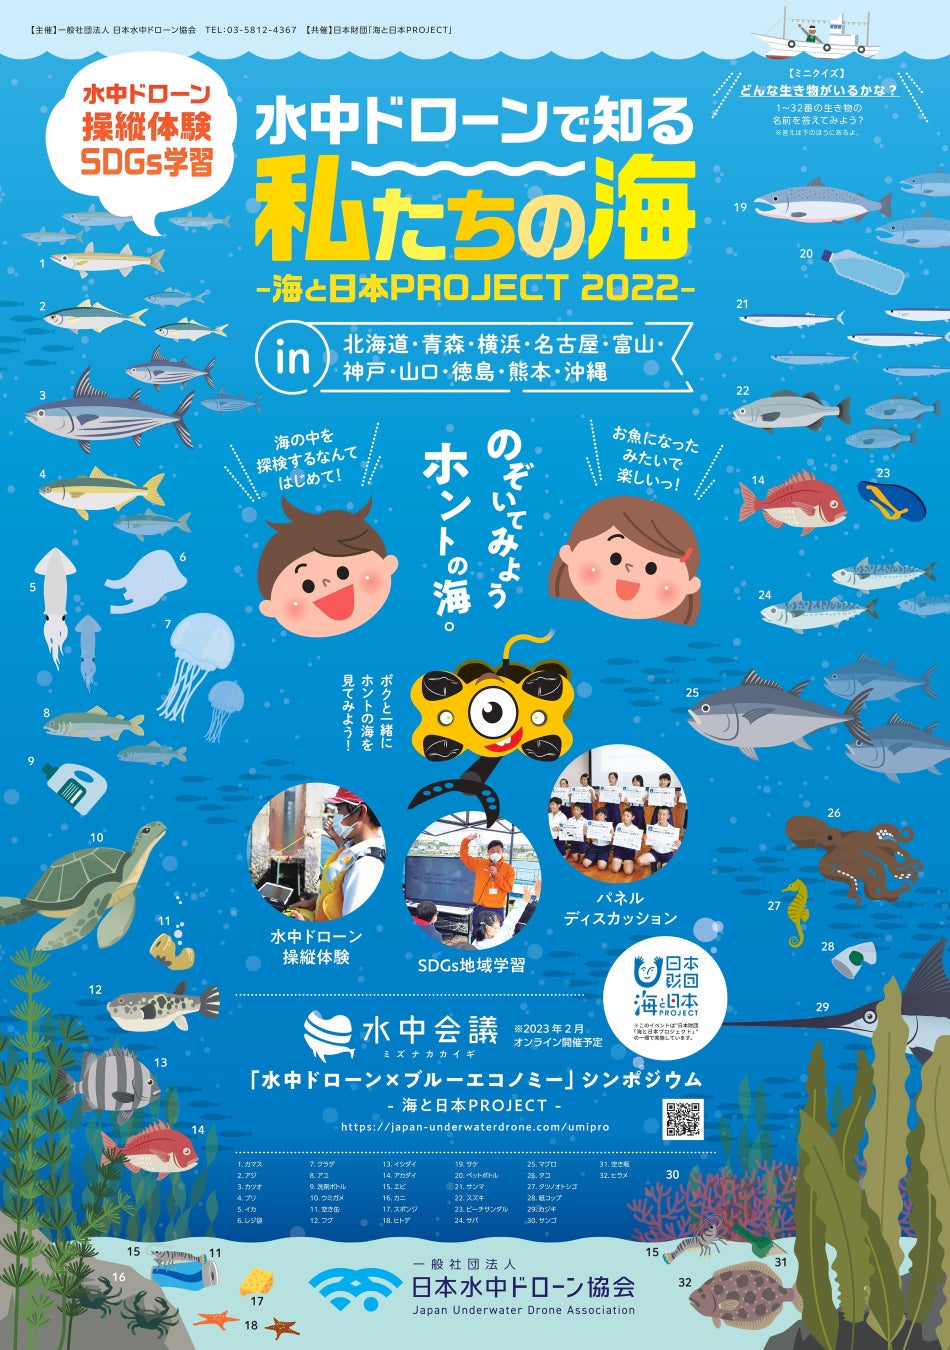 一般社団法人 日本水中ドローン協会、水中ドローン体験会×地域学習(SDGs)【水中ドローンで知る「私たちの海」】の開催を発表。2022年は全国10ヵ所でのサブ画像1_水中ドローンで知る「私たちの海」メインポスター